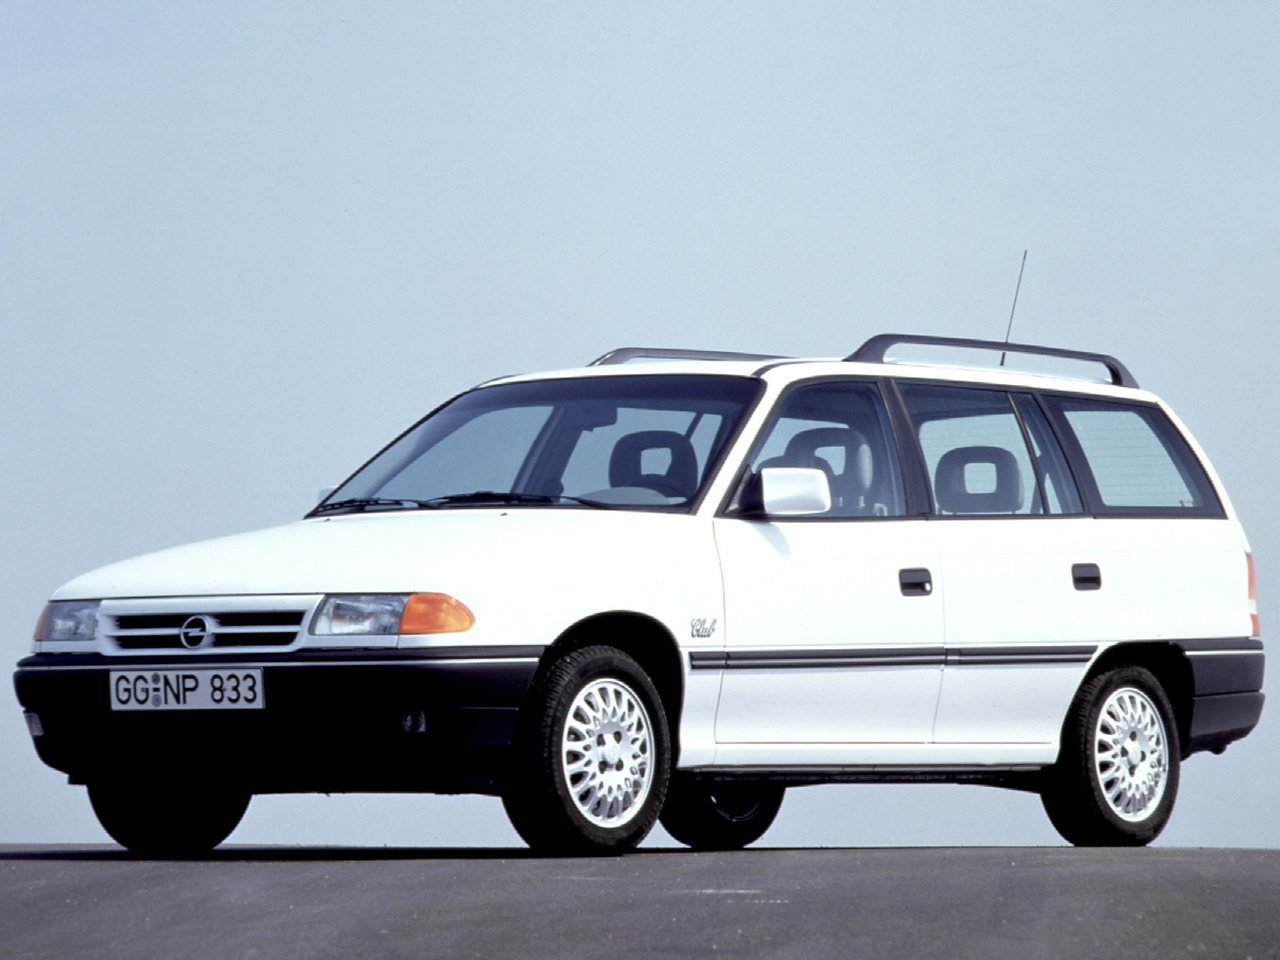 Расход газа семи комплектаций универсала пять дверей Opel Astra. Разница стоимости заправки газом и бензином. Автономный пробег до и после установки ГБО.